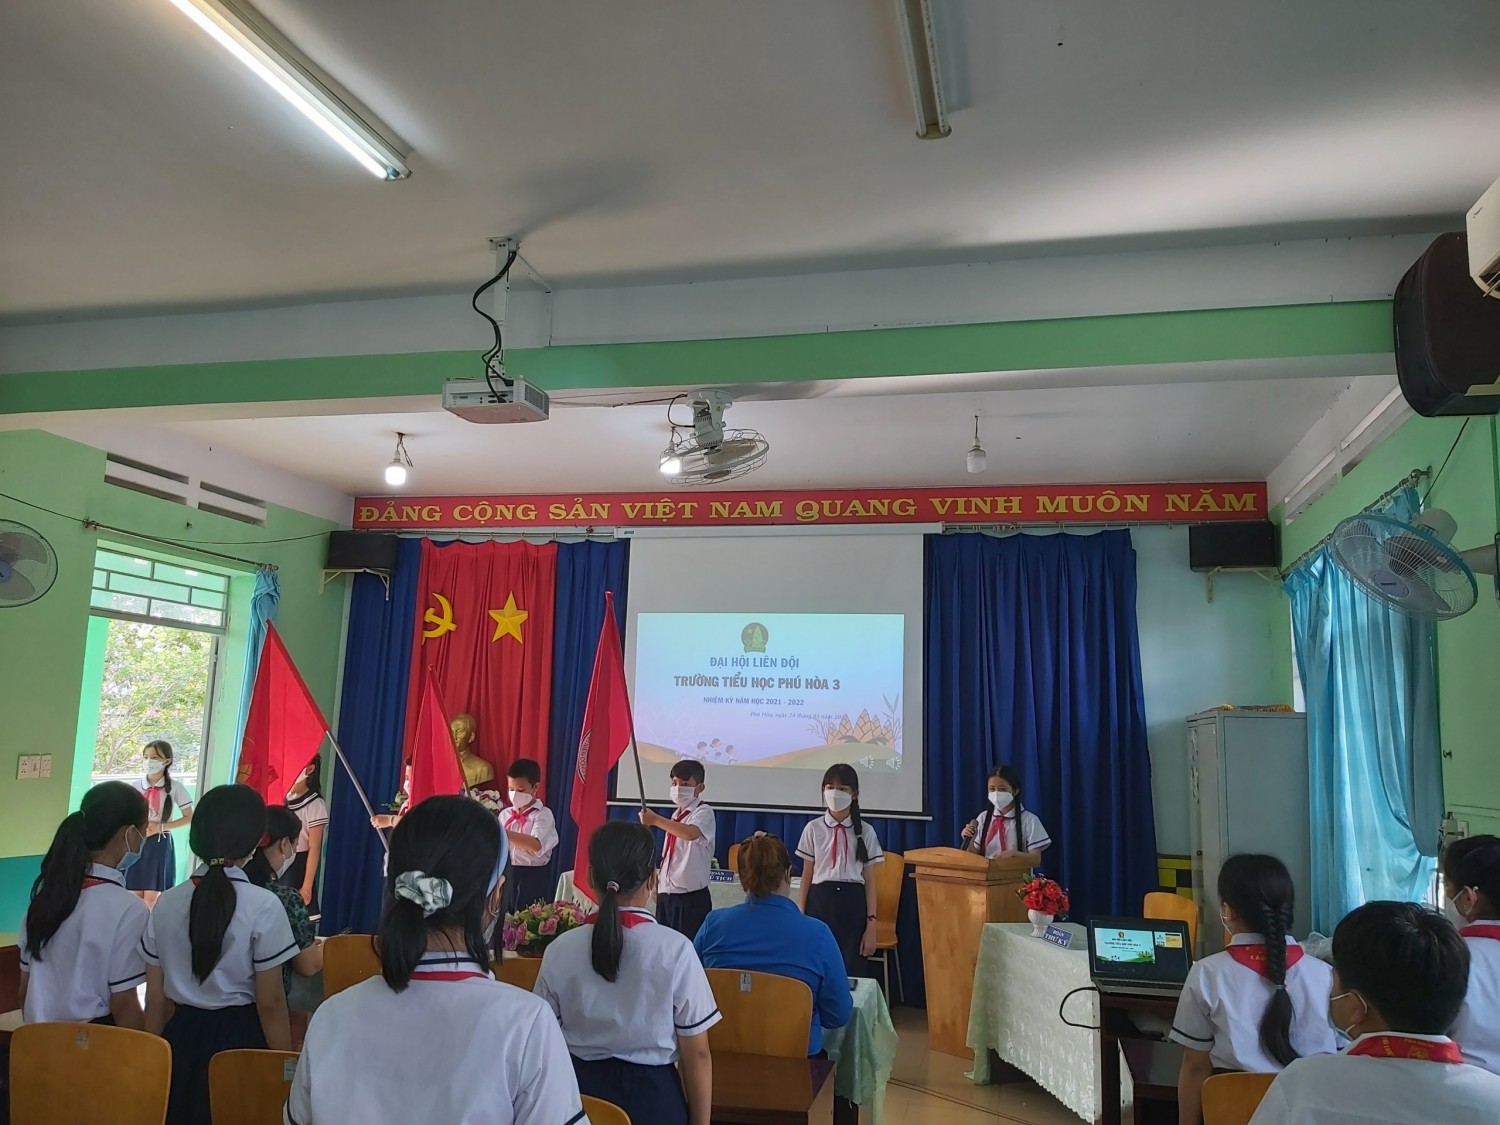 Liên Đội Trường Tiểu học Phú Hòa 3 tổ chức Đại Hội Liên Đội nhiệm kỳ năm học 2021-2022